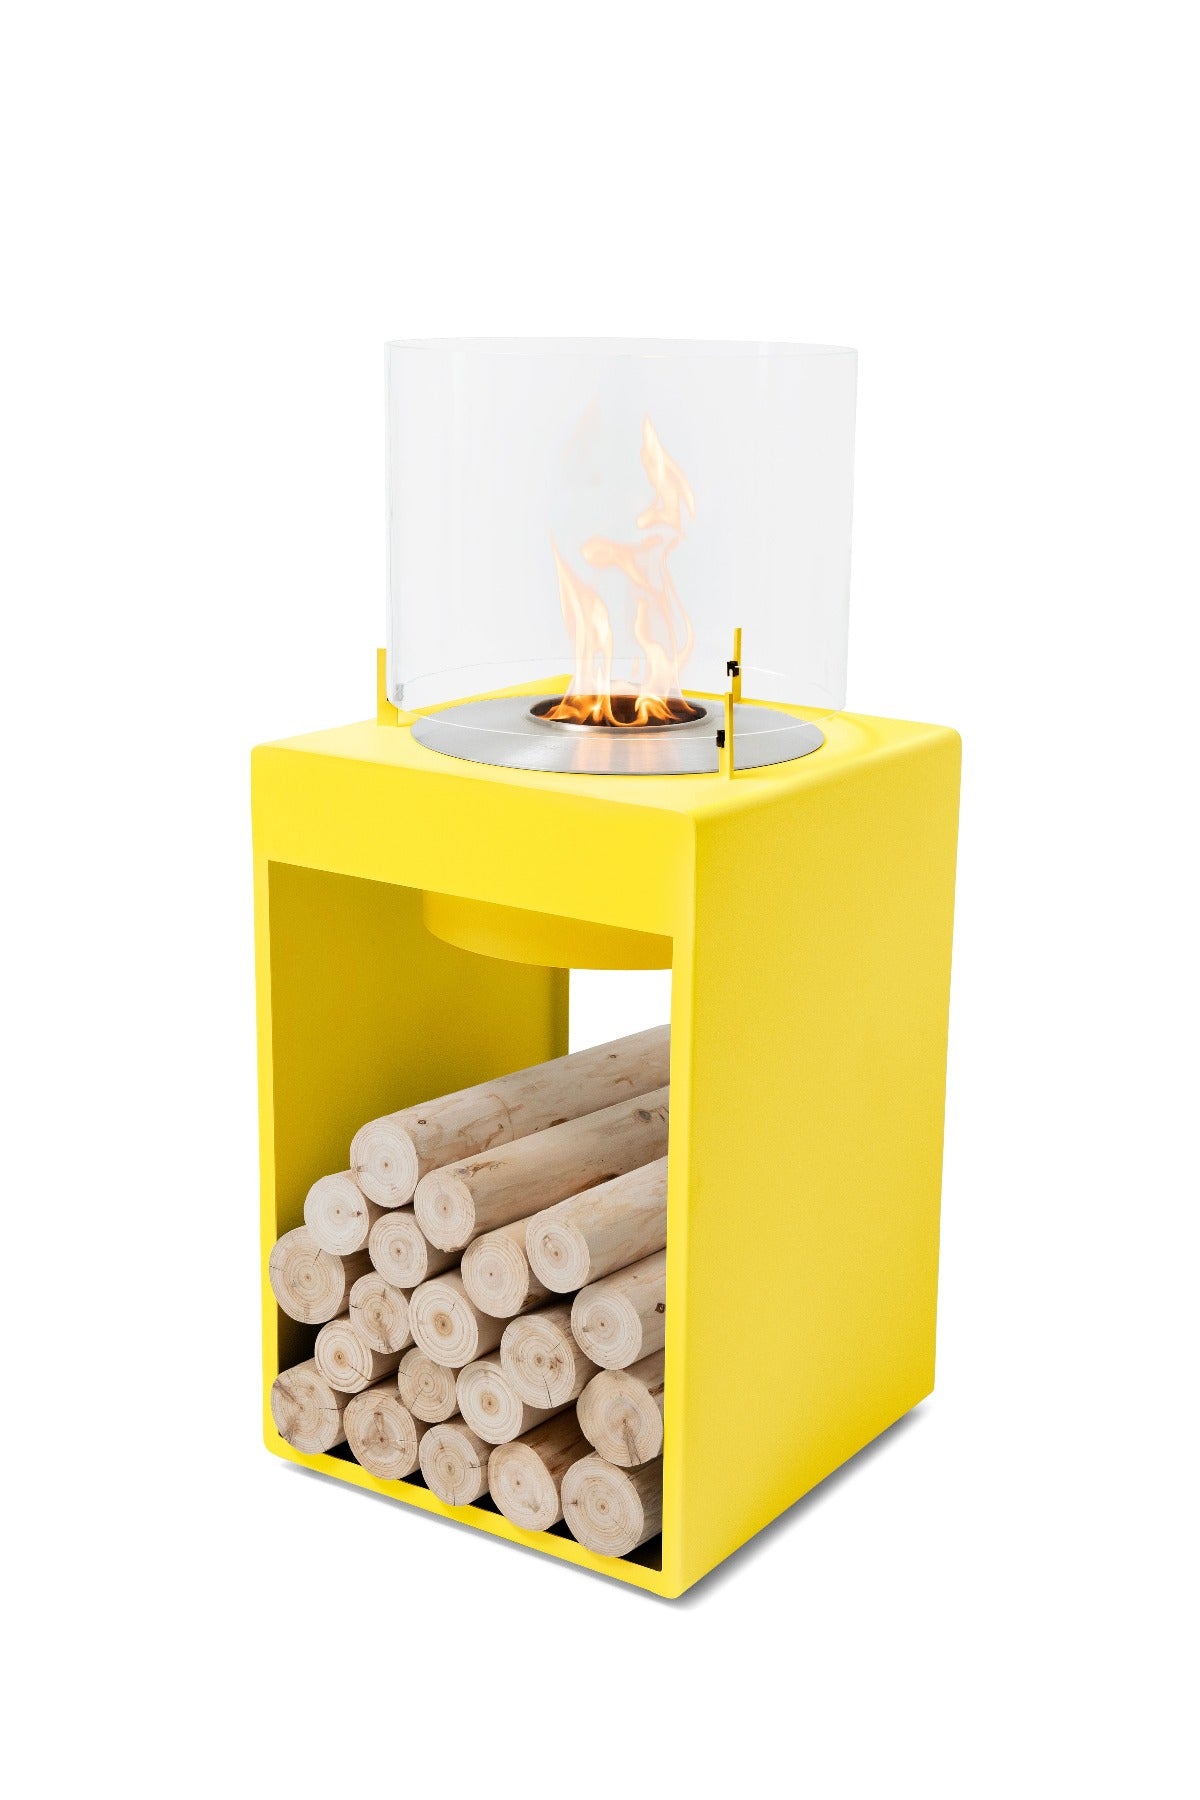 Ecosmart Fire Pop 8T Bioethanol Fireplace - Alfresco Heat